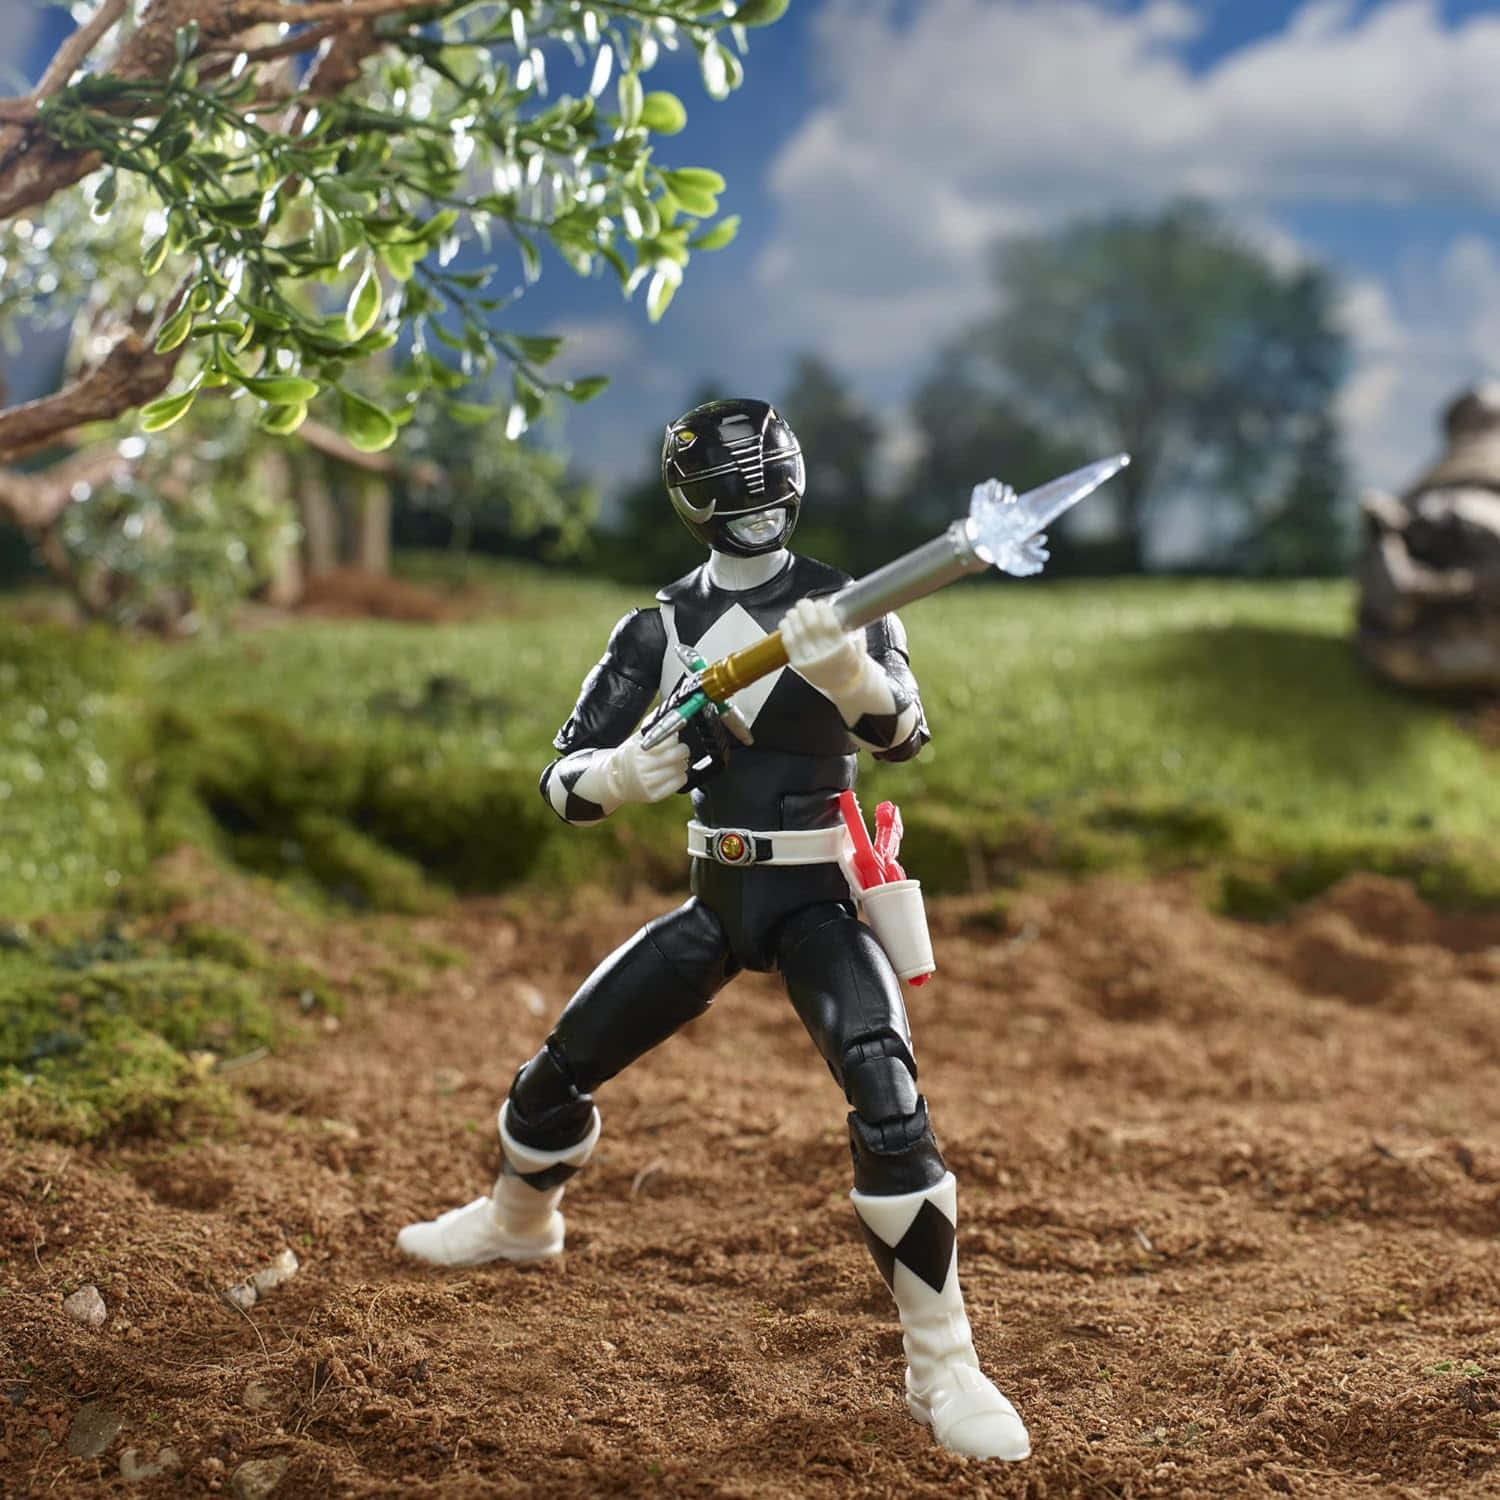 Black Ranger Action Figure Outdoor Scene Wallpaper